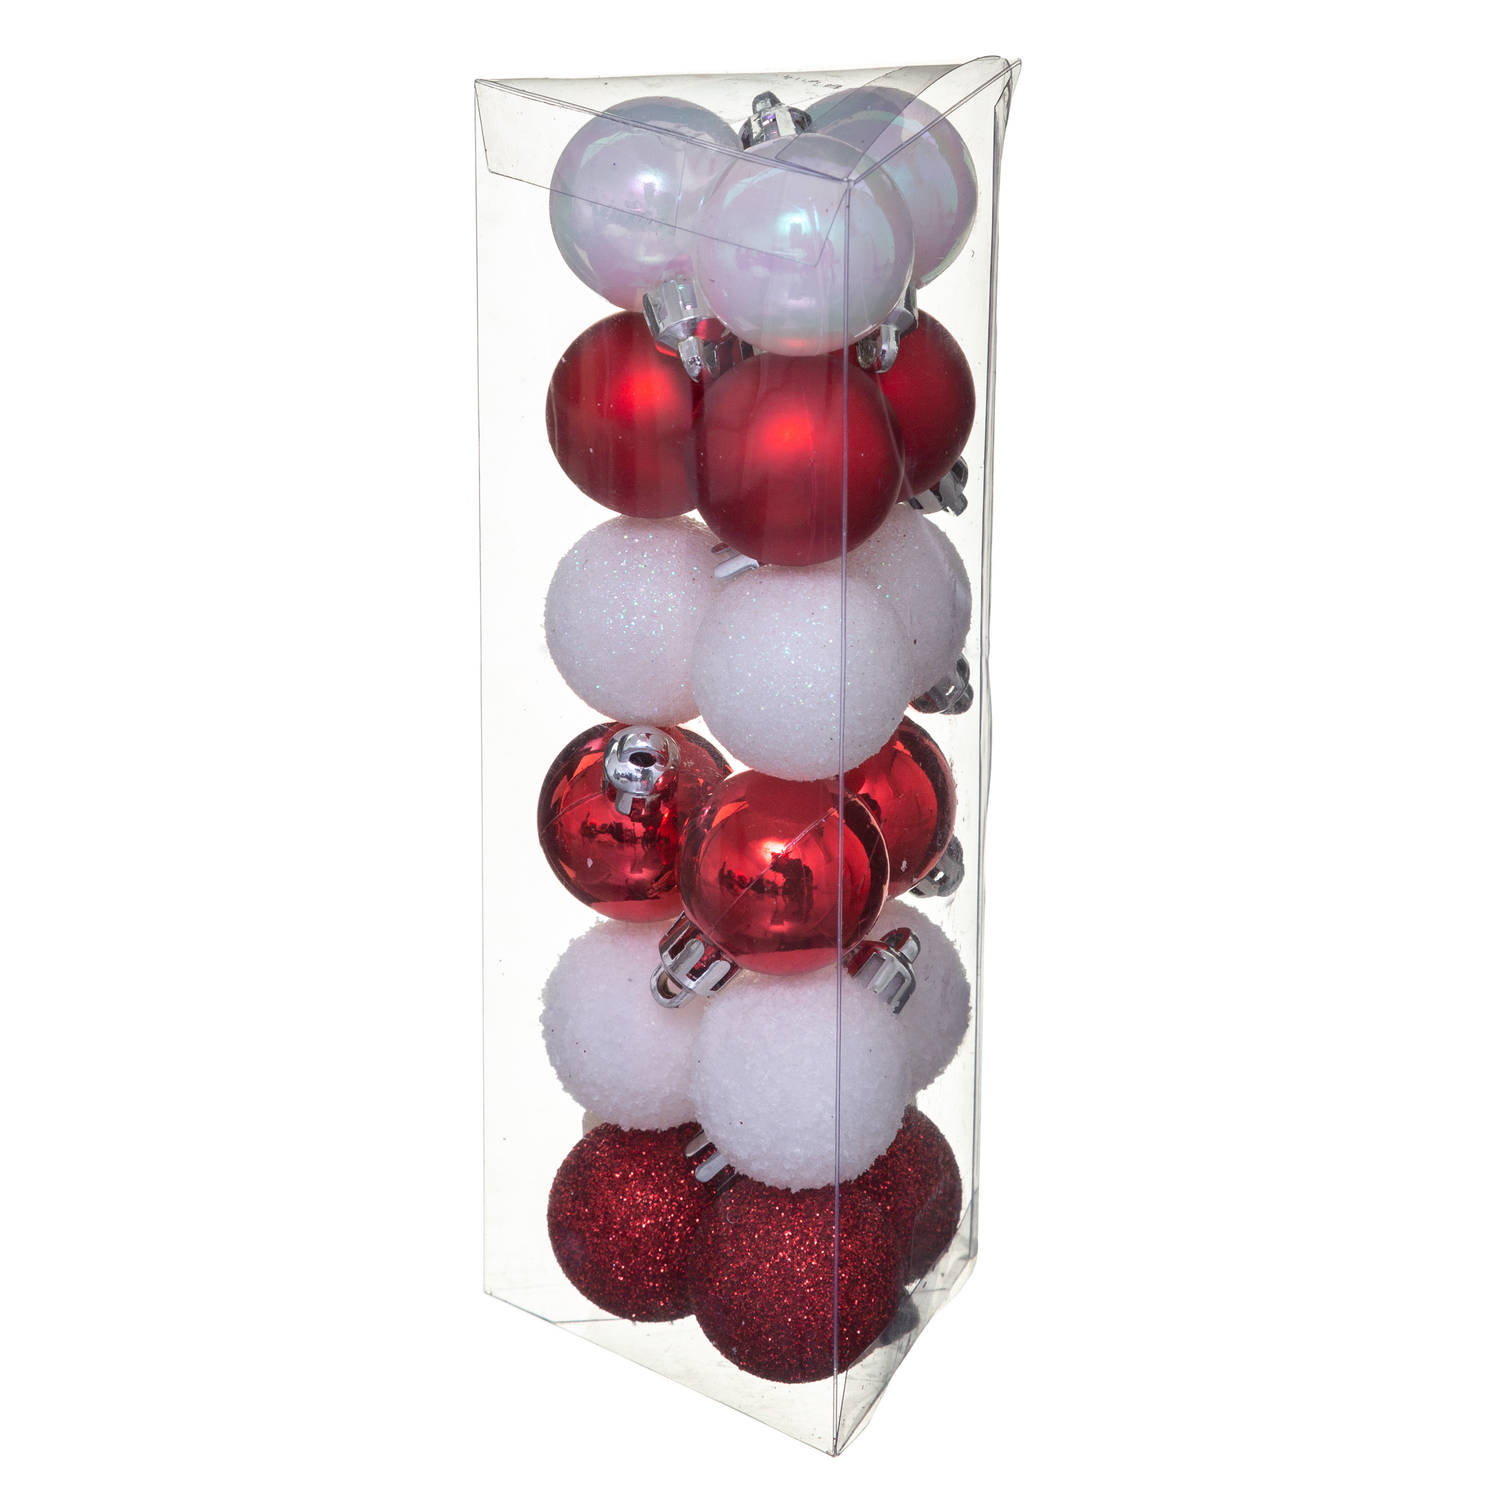 18x stuks kerstballen wit/rood glans en mat kunststof 3 cm - Kerstbal